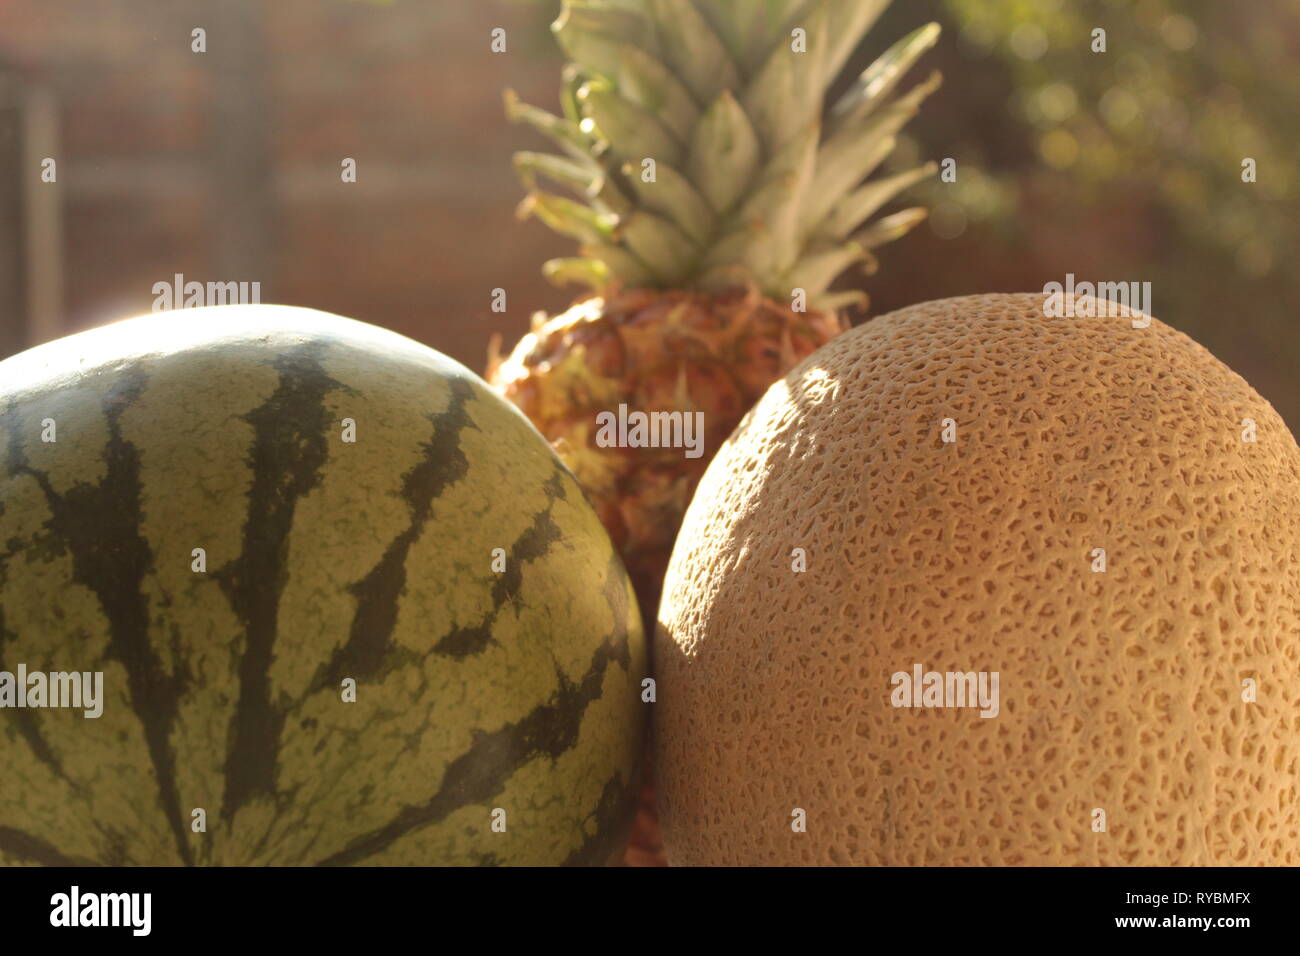 close up de bodegón de frutas tropicales como piña, sandia y melón foto tomada en mi jardín utilizando un lente 18-55mm marca canon Stock Photo